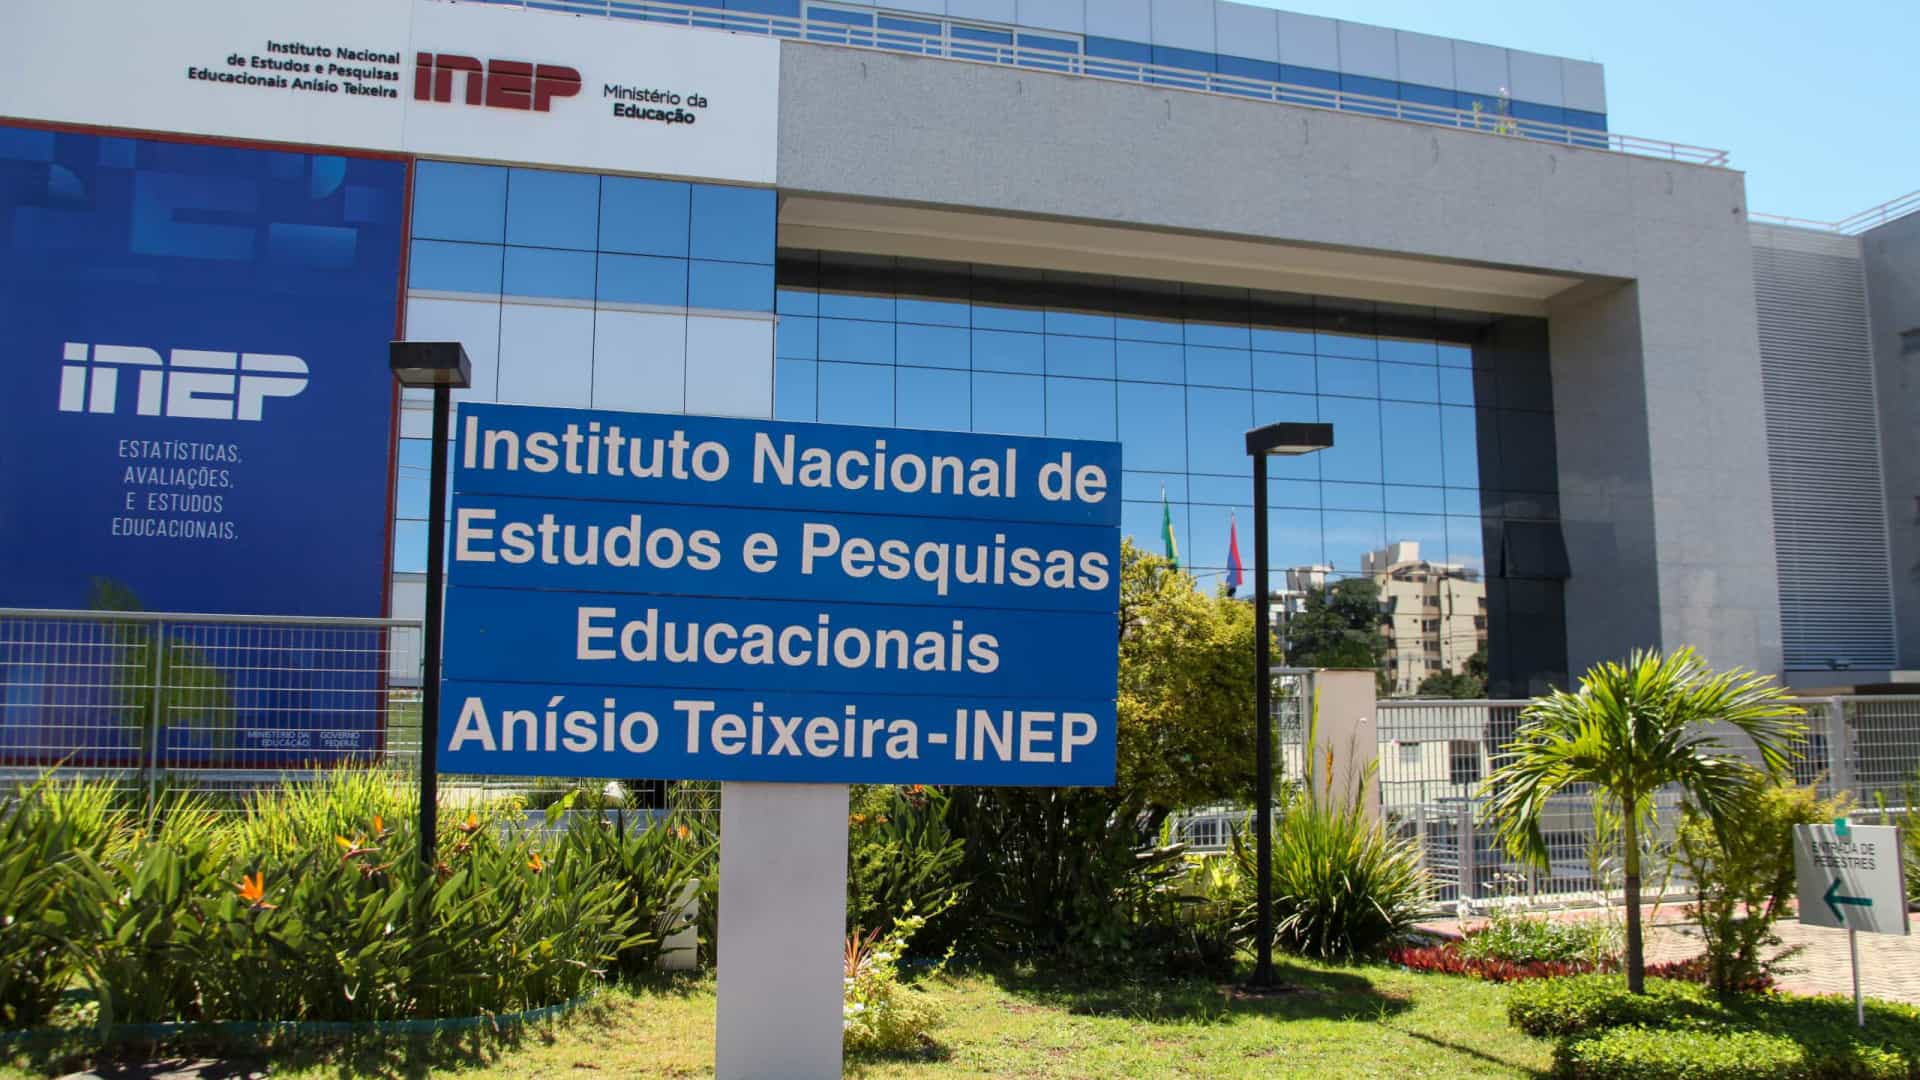 INEP retira do ar dados sobre o Censo Escolar da Educação Básica e bancada do PSOL pede investigação ao MPF